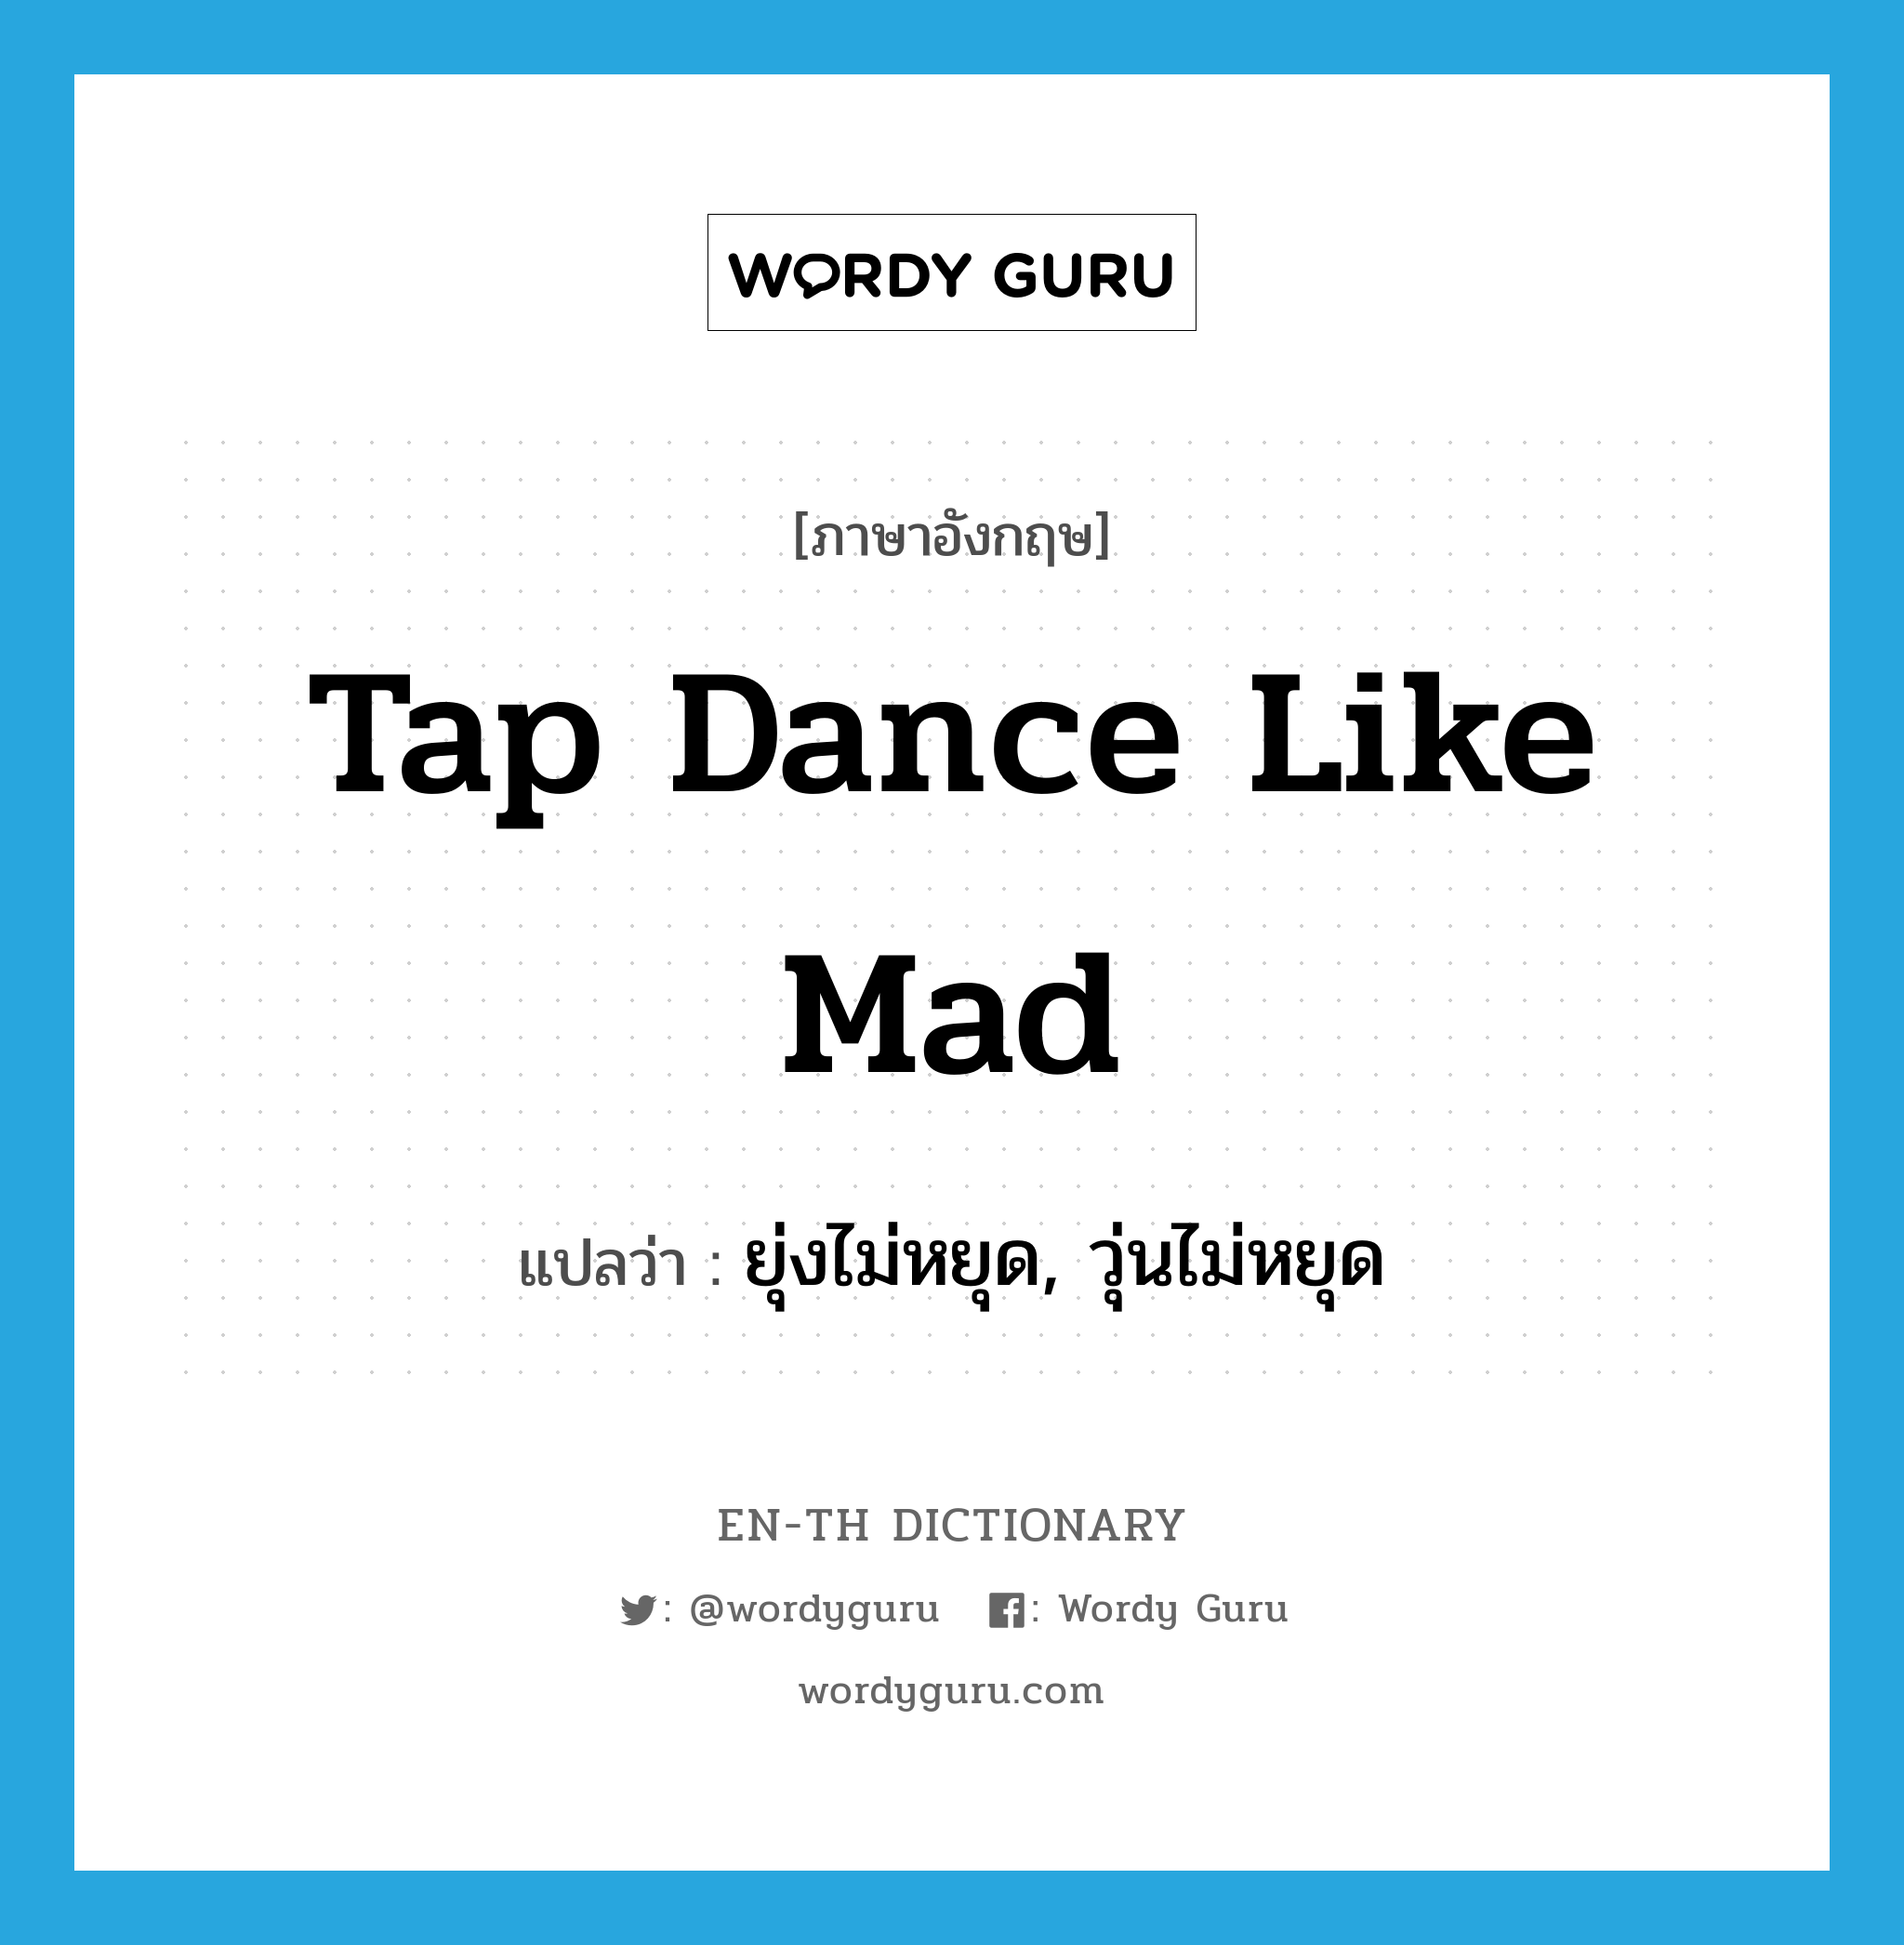 ยุ่งไม่หยุด, วุ่นไม่หยุด ภาษาอังกฤษ?, คำศัพท์ภาษาอังกฤษ ยุ่งไม่หยุด, วุ่นไม่หยุด แปลว่า tap dance like mad ประเภท SL หมวด SL